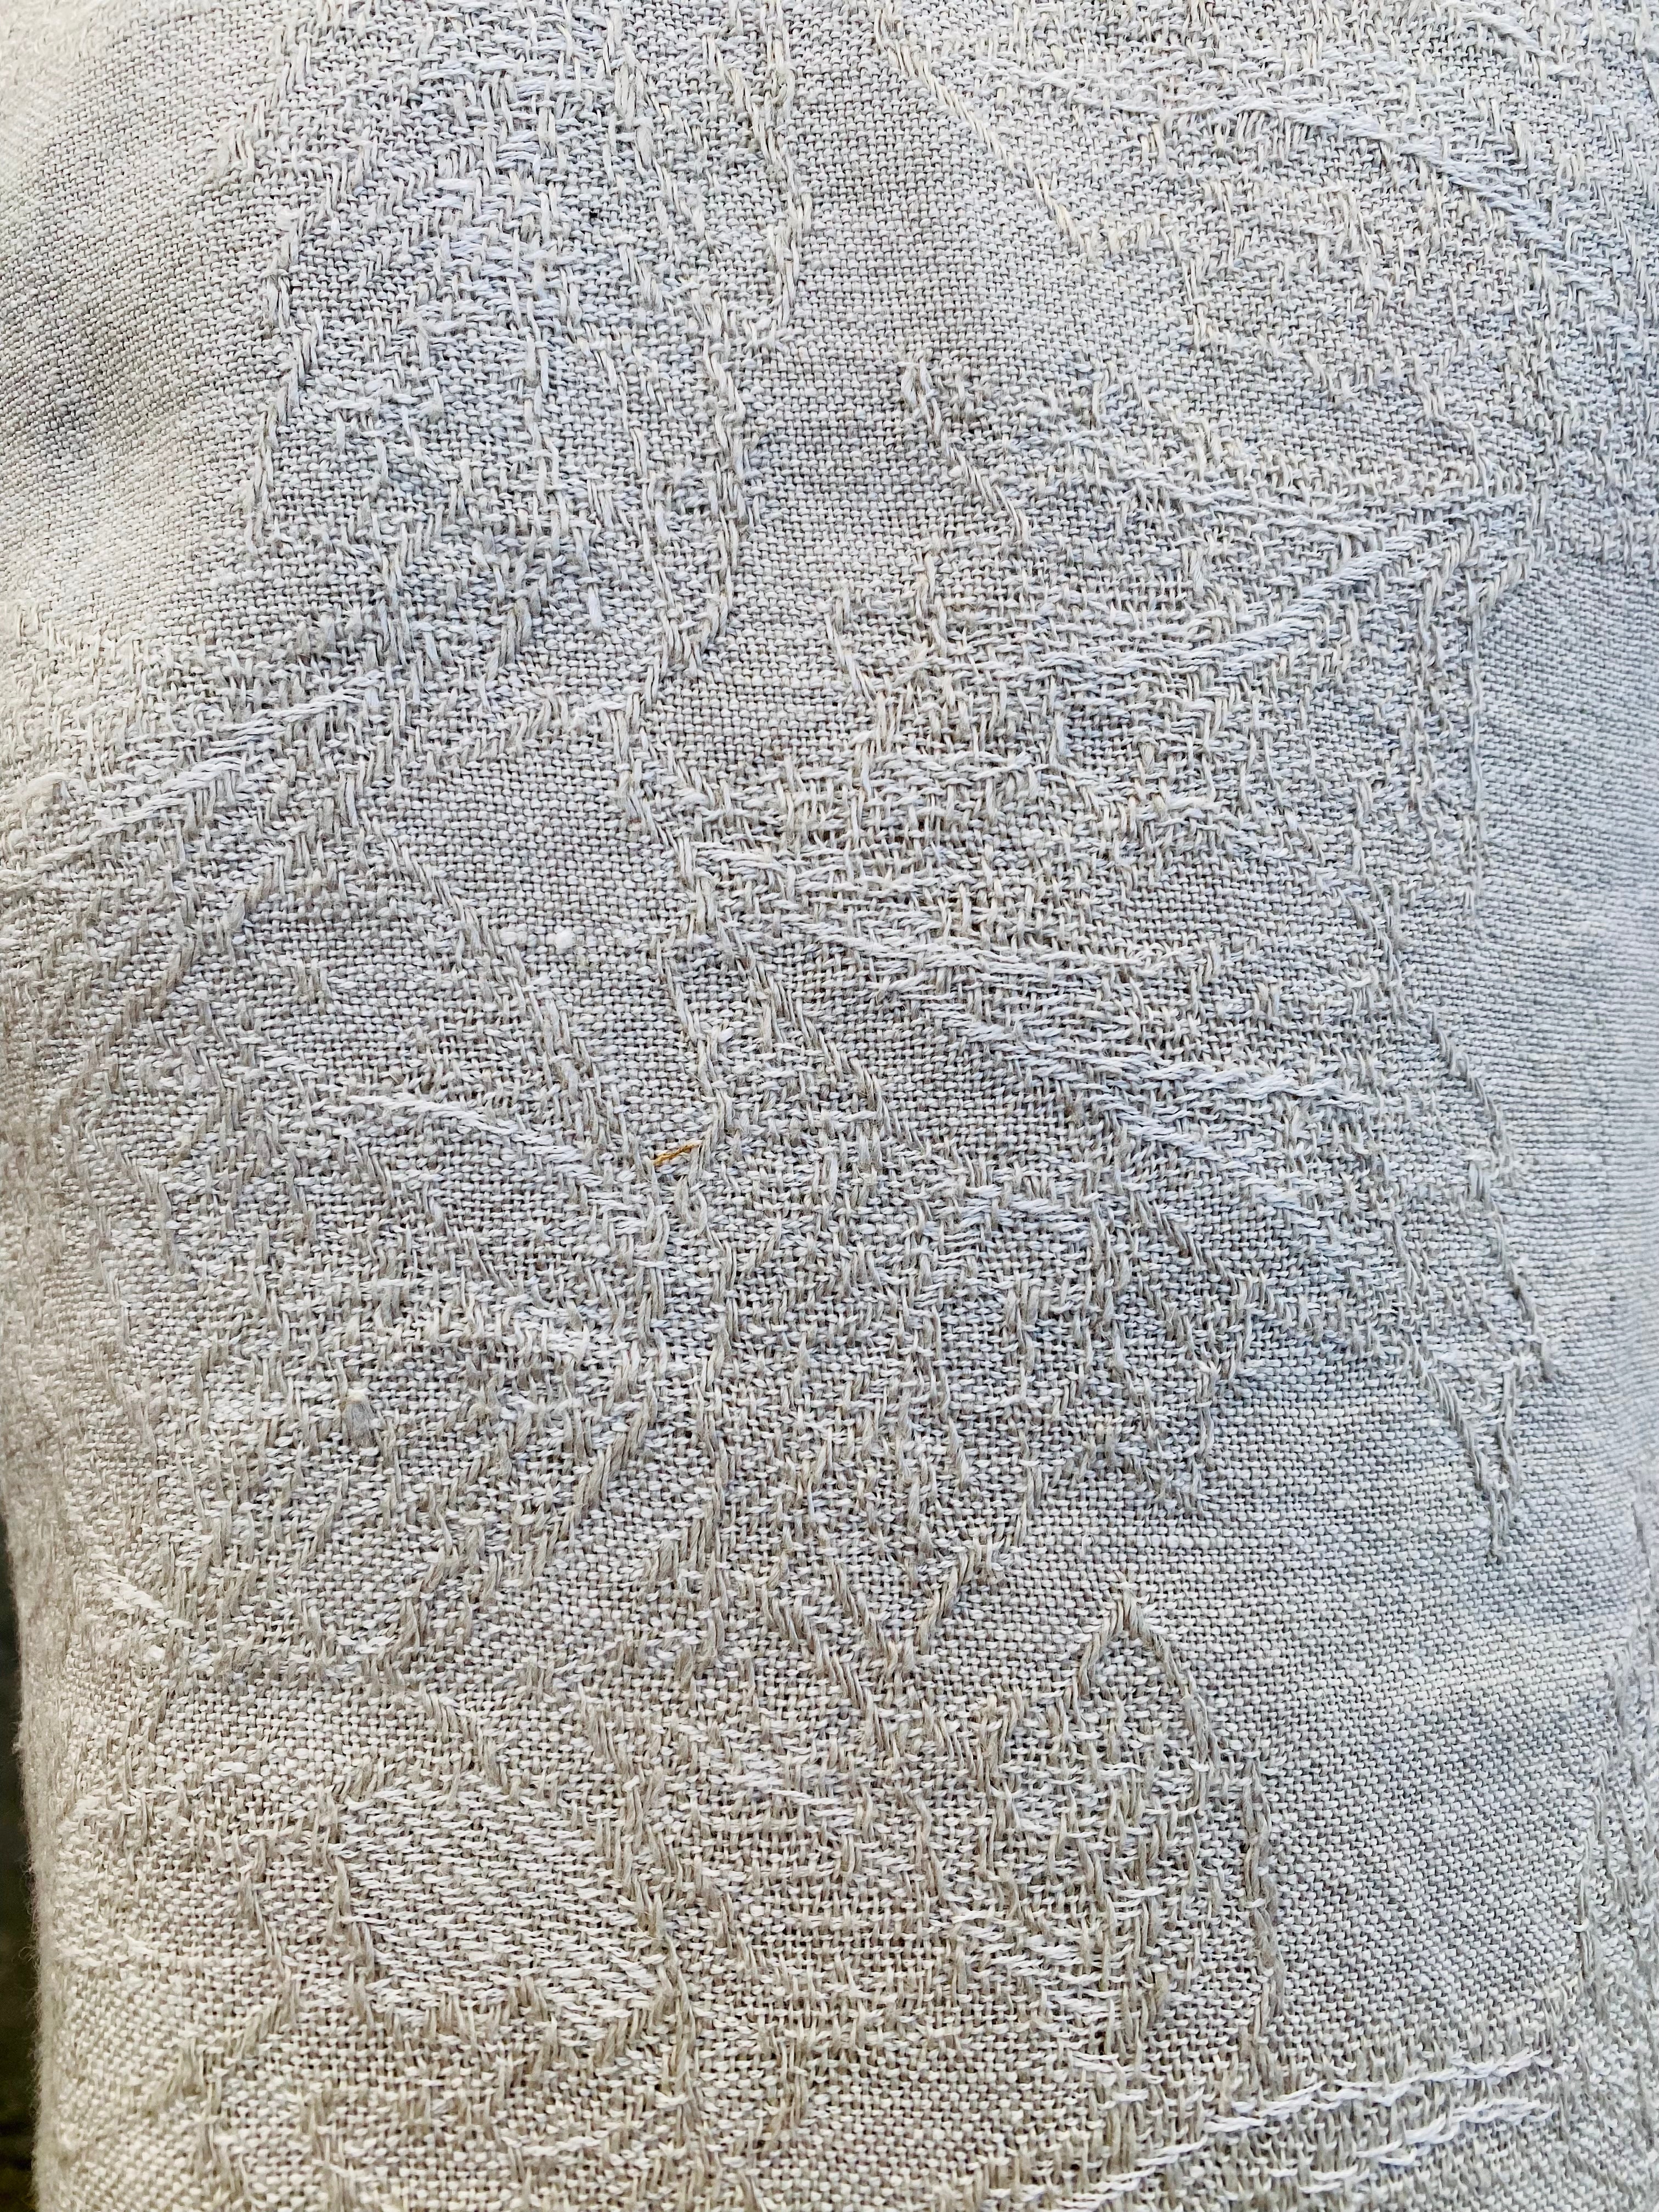 Burraco tovaglia - tablecloth